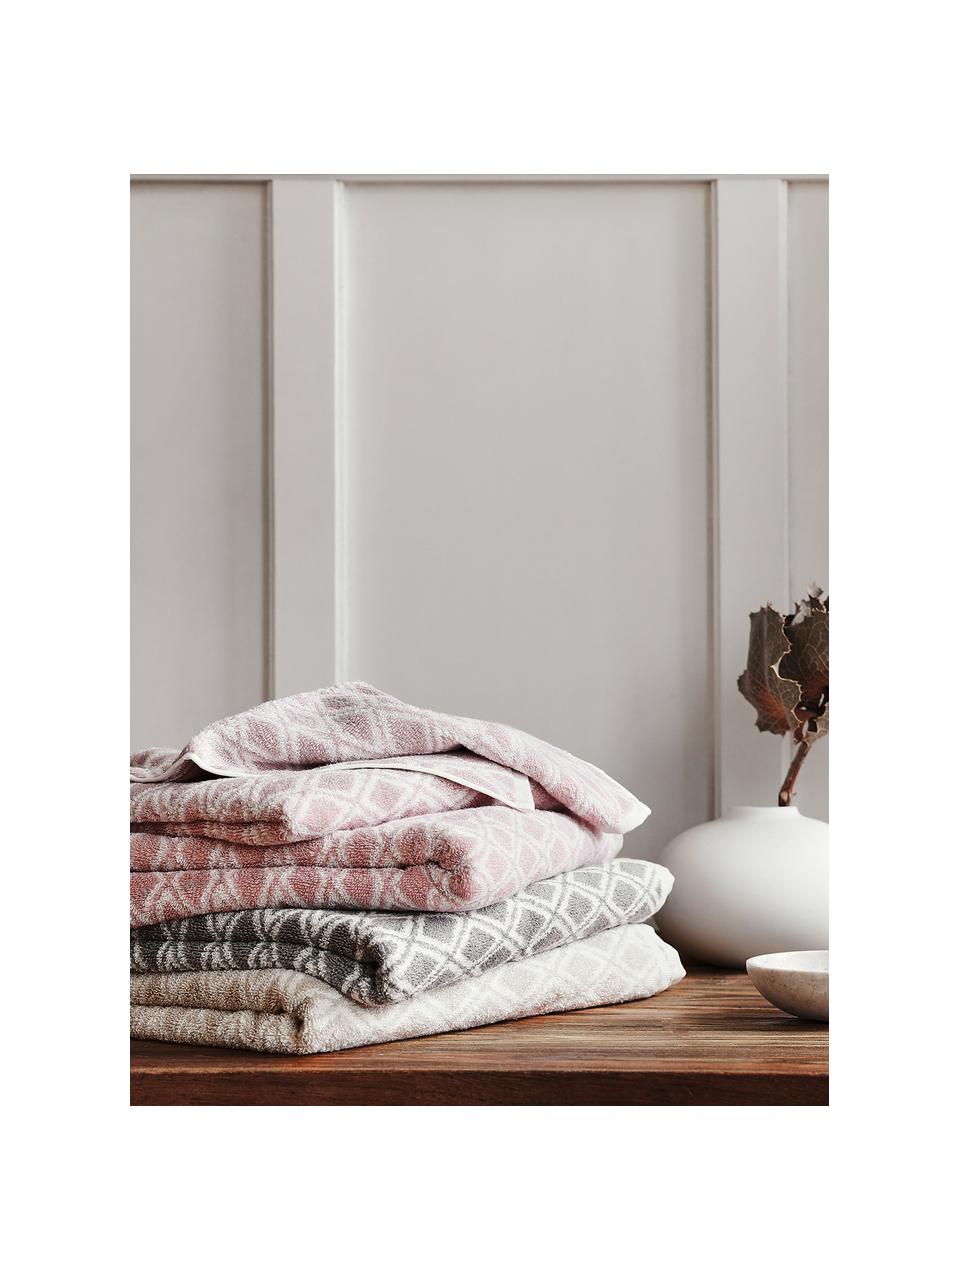 Dubbelzijdige handdoek Ava met grafisch patroon, Zandkleurig, crèmewit, Handdoek, B 50 x L 100 cm, 2 stuks